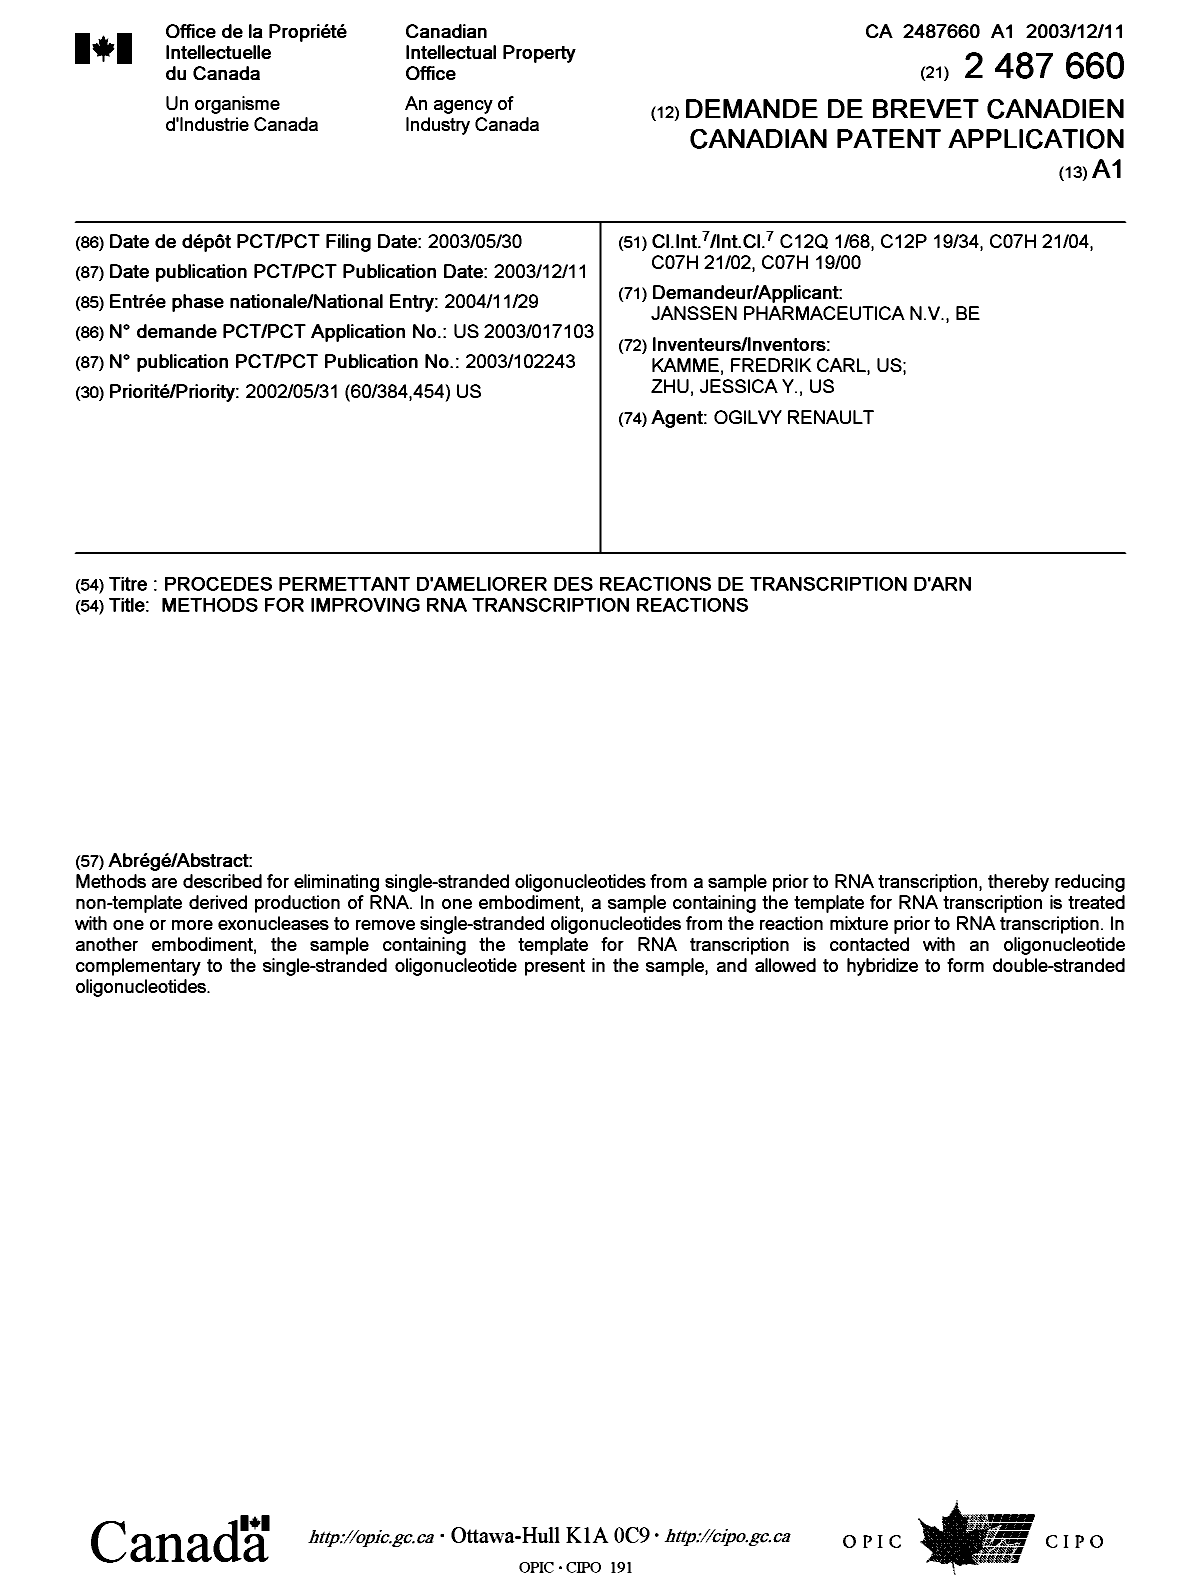 Document de brevet canadien 2487660. Page couverture 20050204. Image 1 de 1